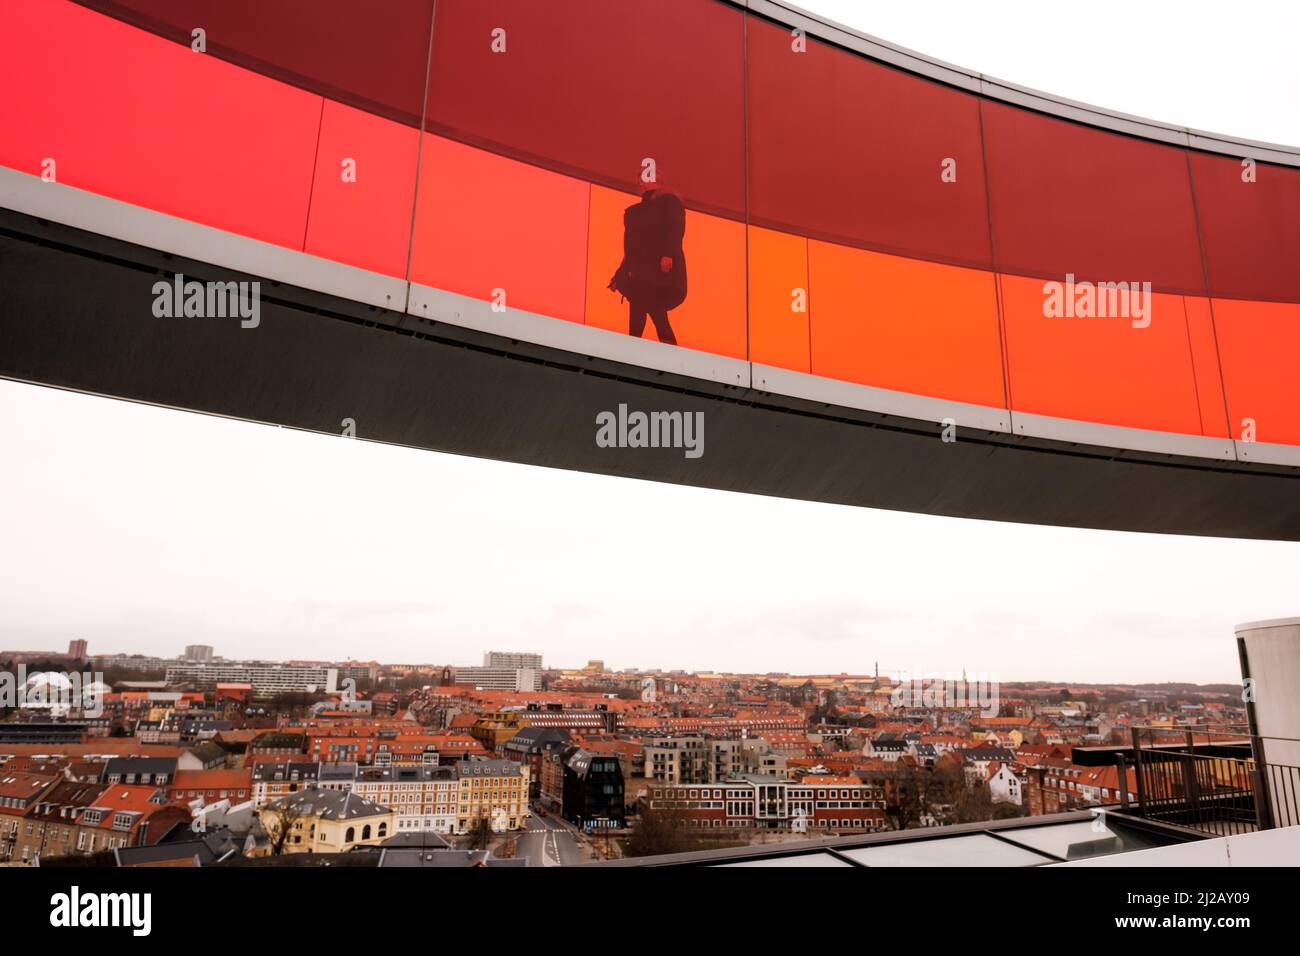 Galería de arte de Aarhus Foto de stock